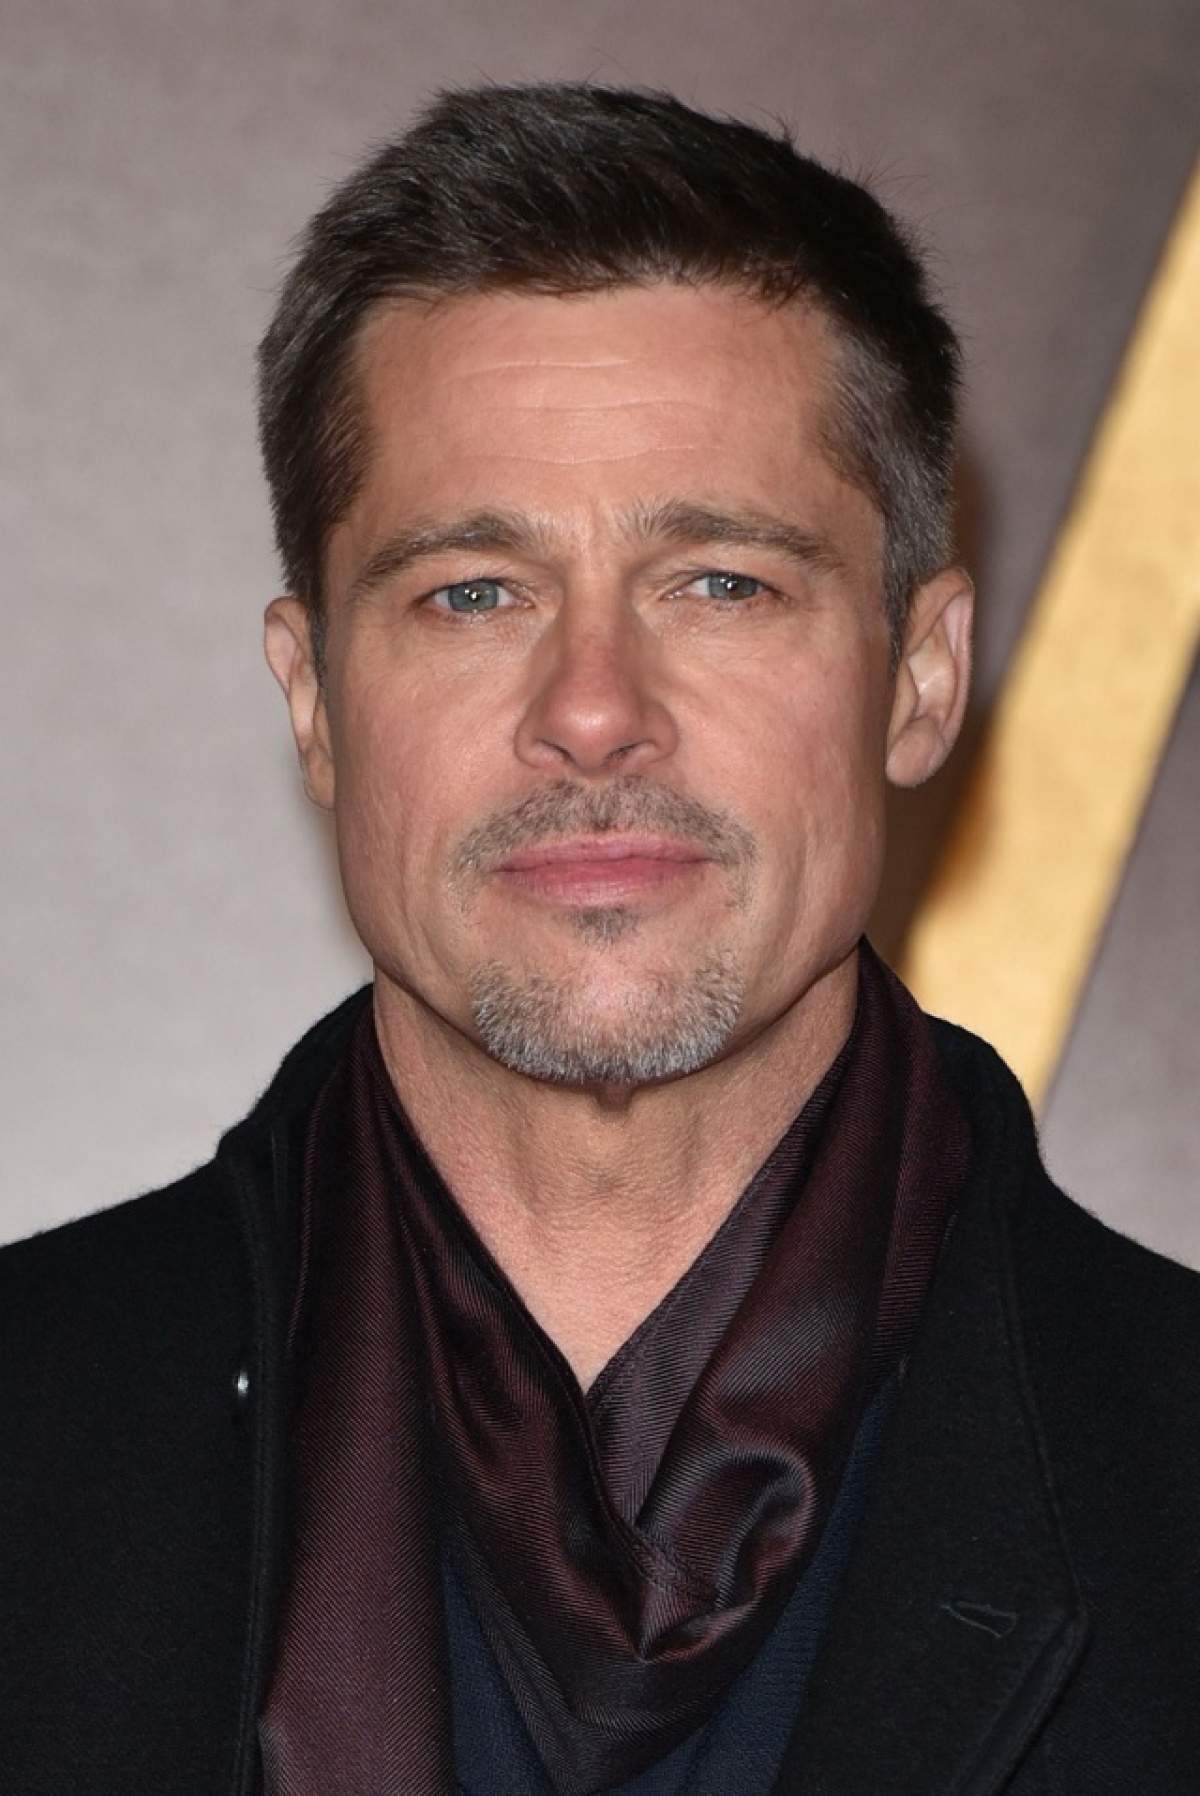 FOTO / Nu o să îl mai recunoşti! Ce ţi-ai făcut la faţă, Brad Pitt?